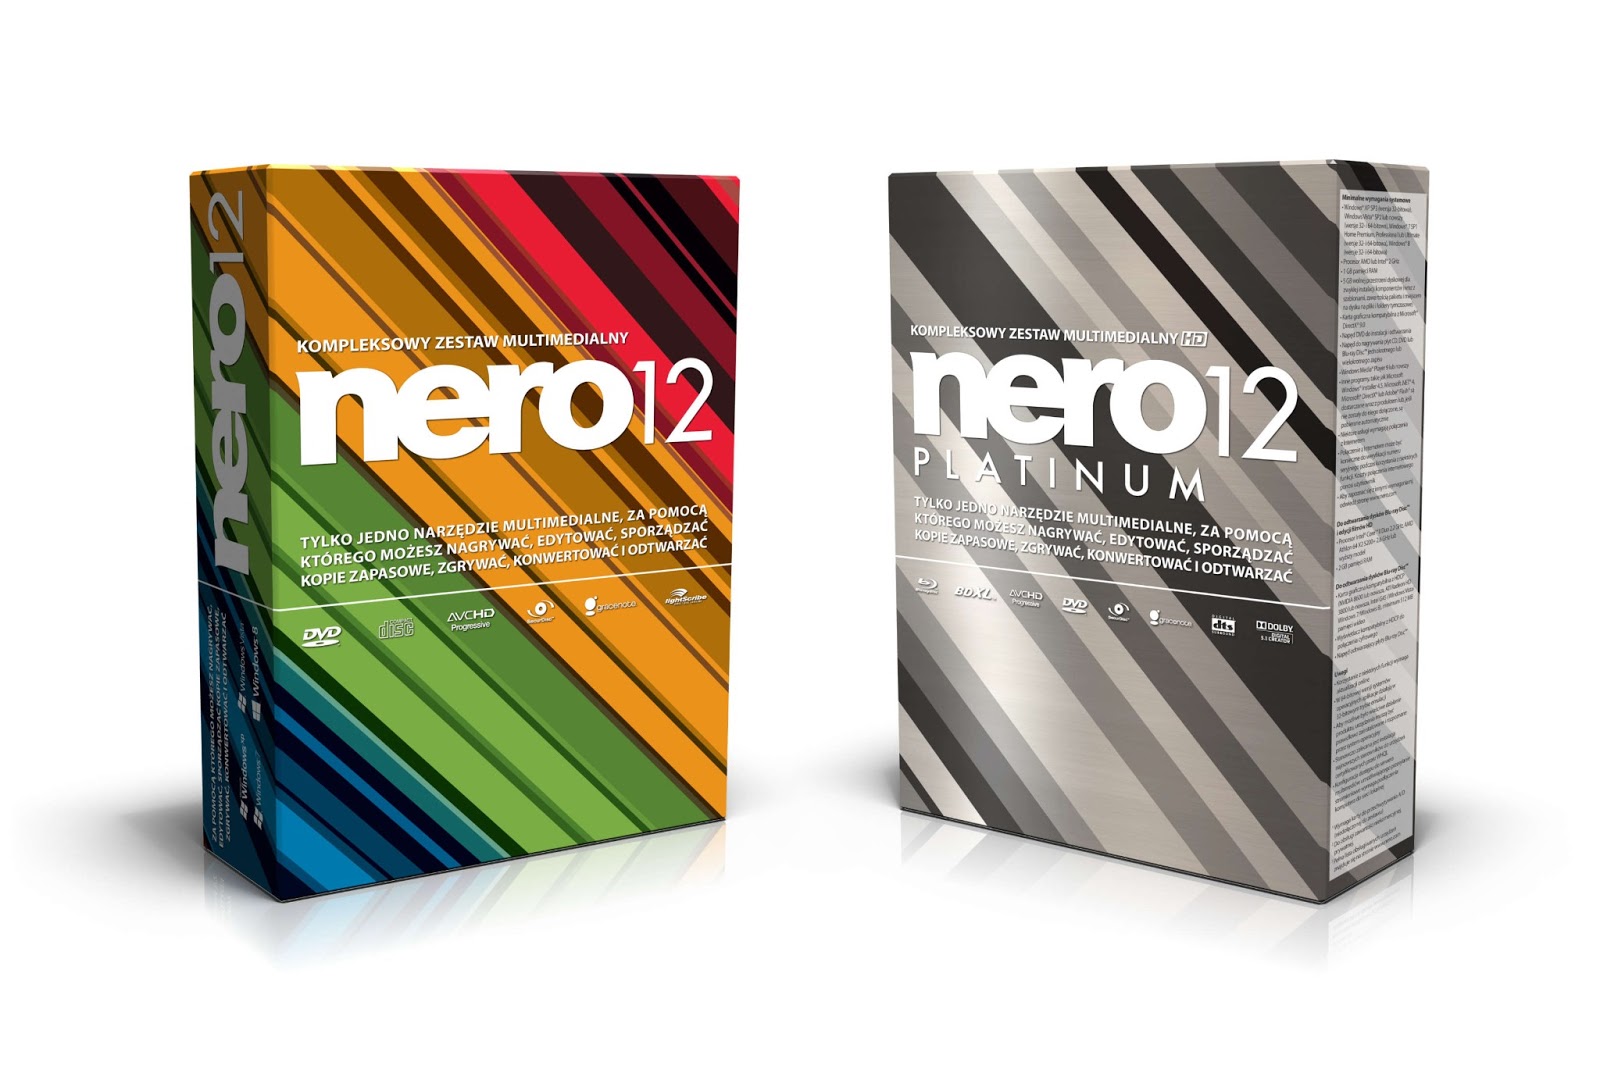 Nero 6.6.0.12 serial key or number